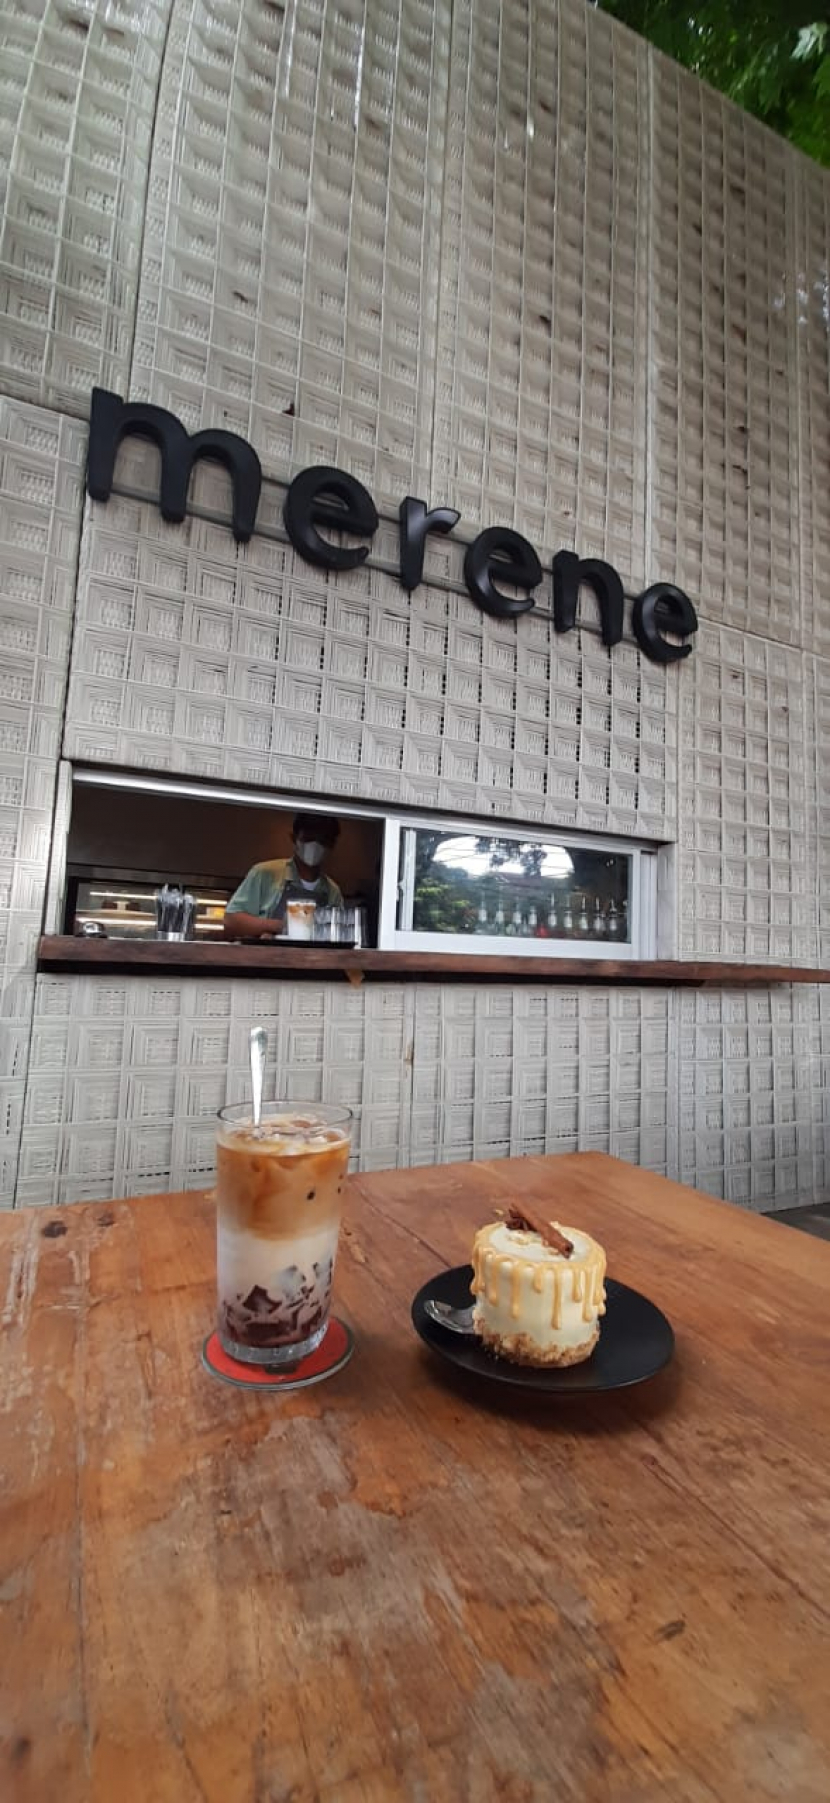 Salah satu minuman dan camilan di Kafe Merene, Pejaten, Jakarta Selatan